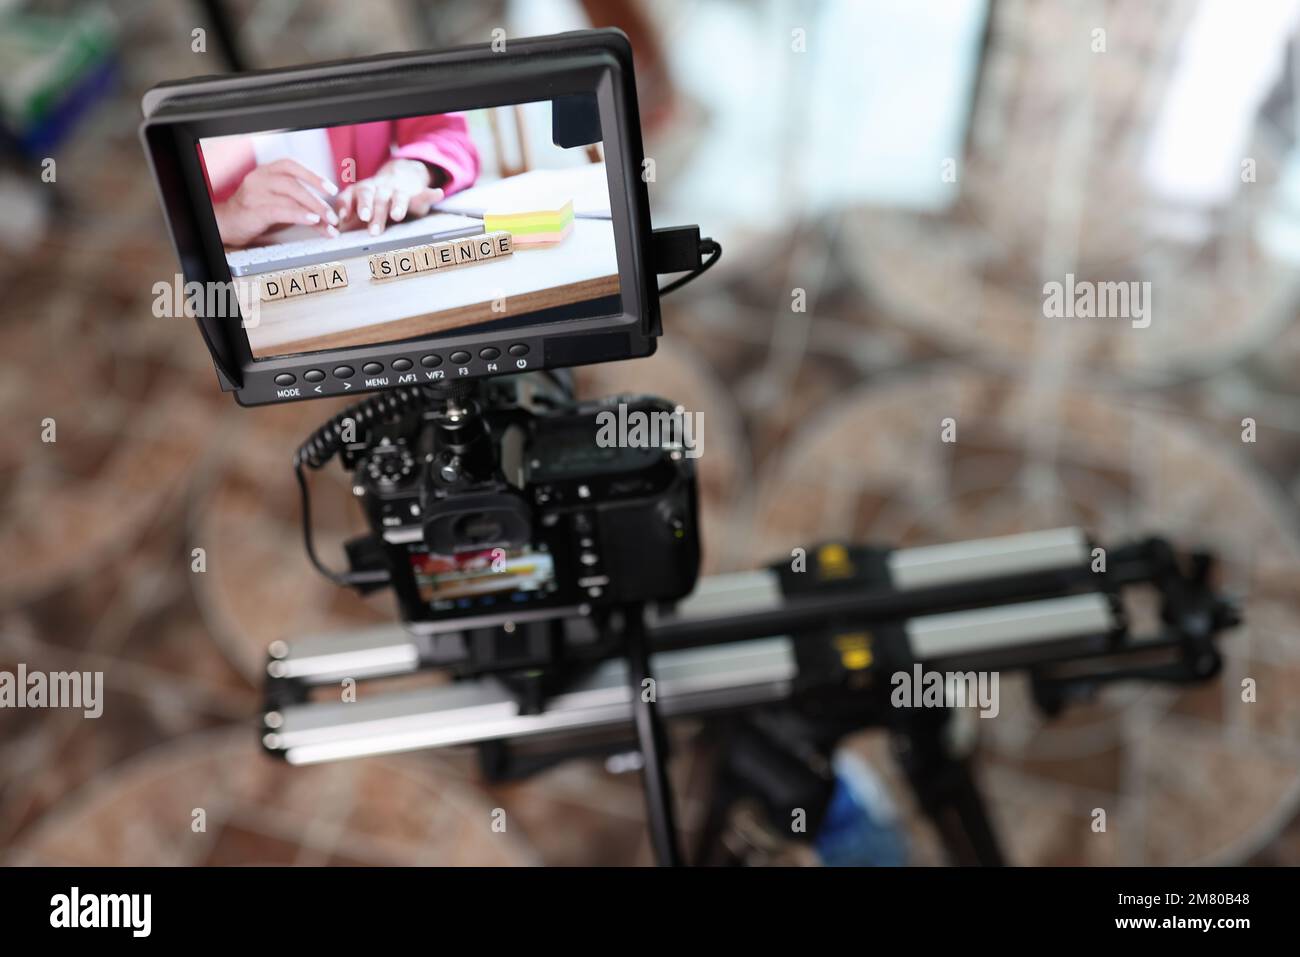 Fotocamera digitale con monitor esterno sul cursore della fotocamera per riprendere la donna che digita sulla tastiera. Foto Stock